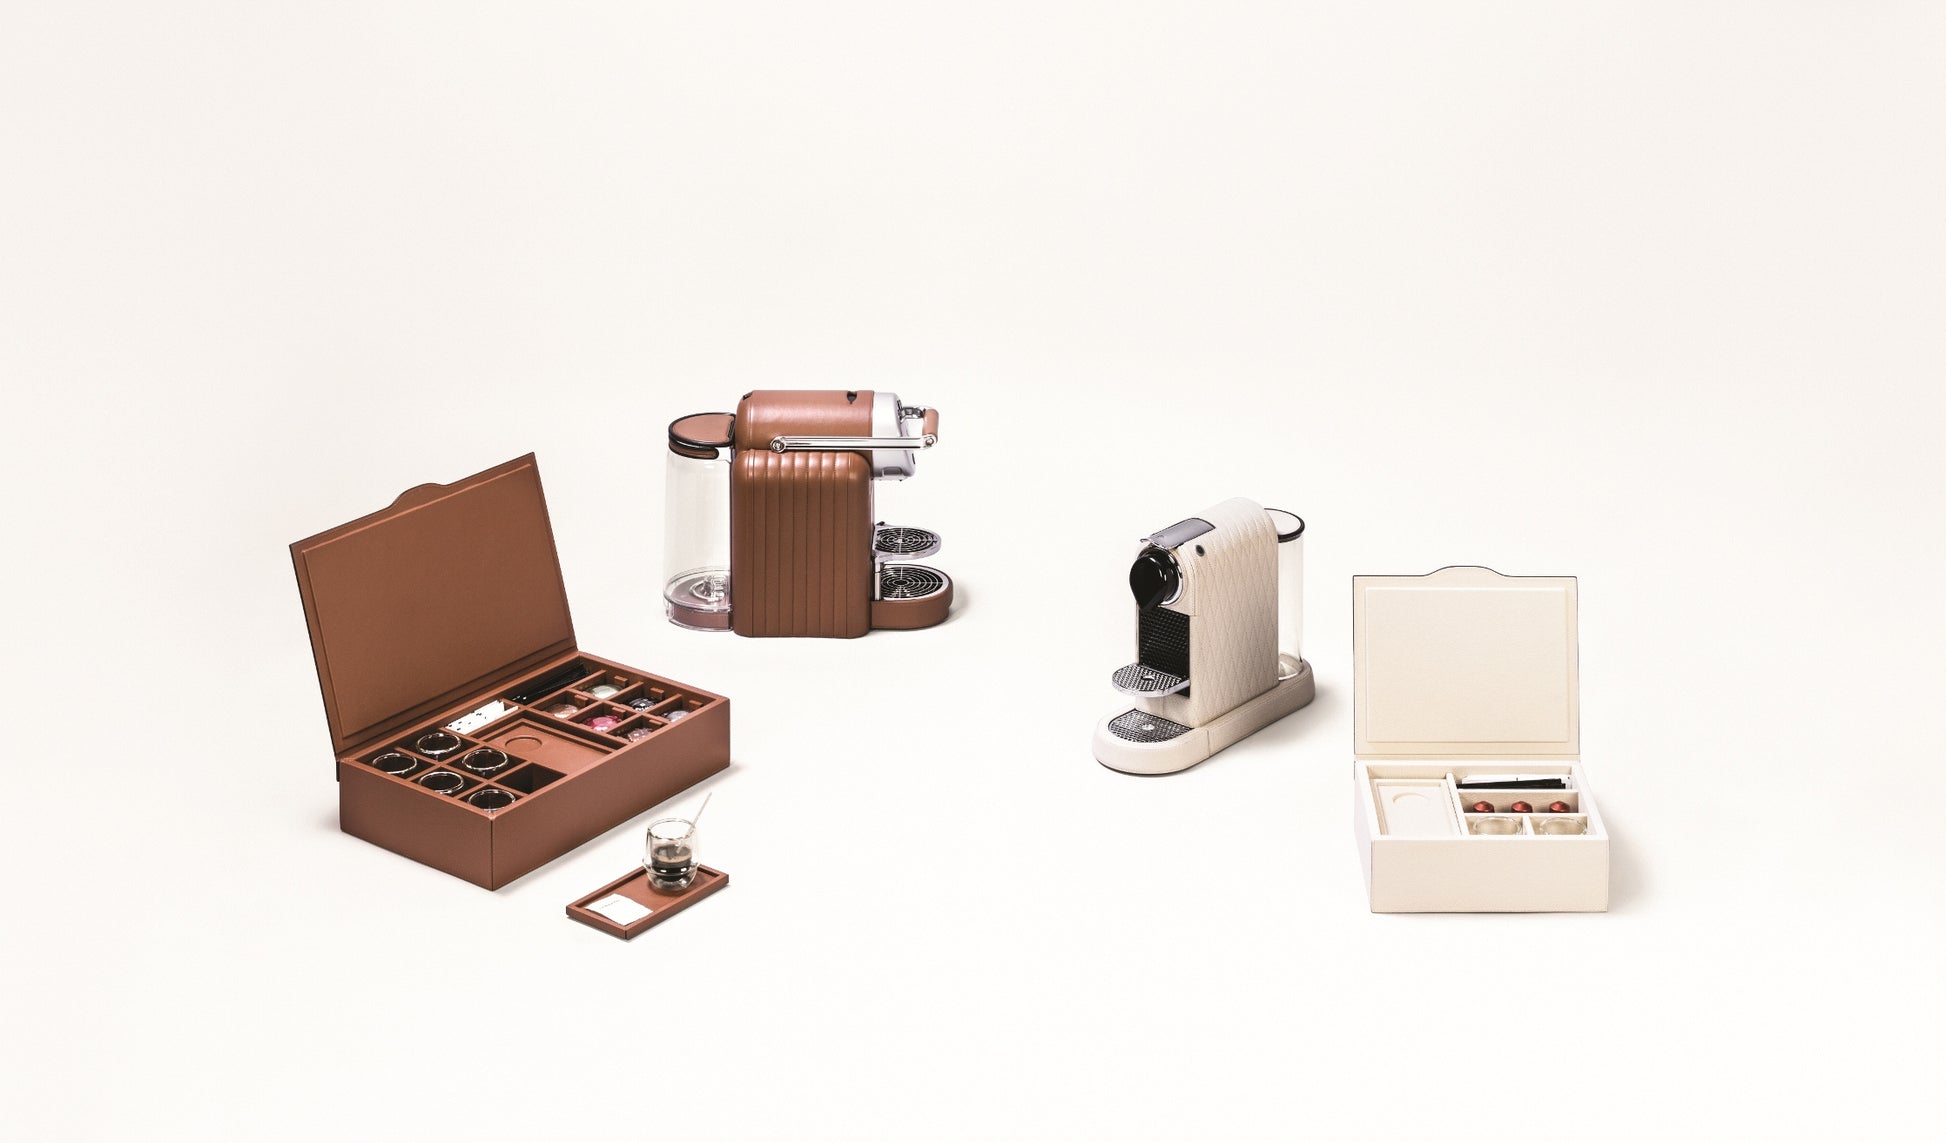 Pigment France Citiz Diamonds Coffee Machine | Premium Kitchen Appliances, Elegant Coffee Makers & Unique Gifts | 2Jour Concierge